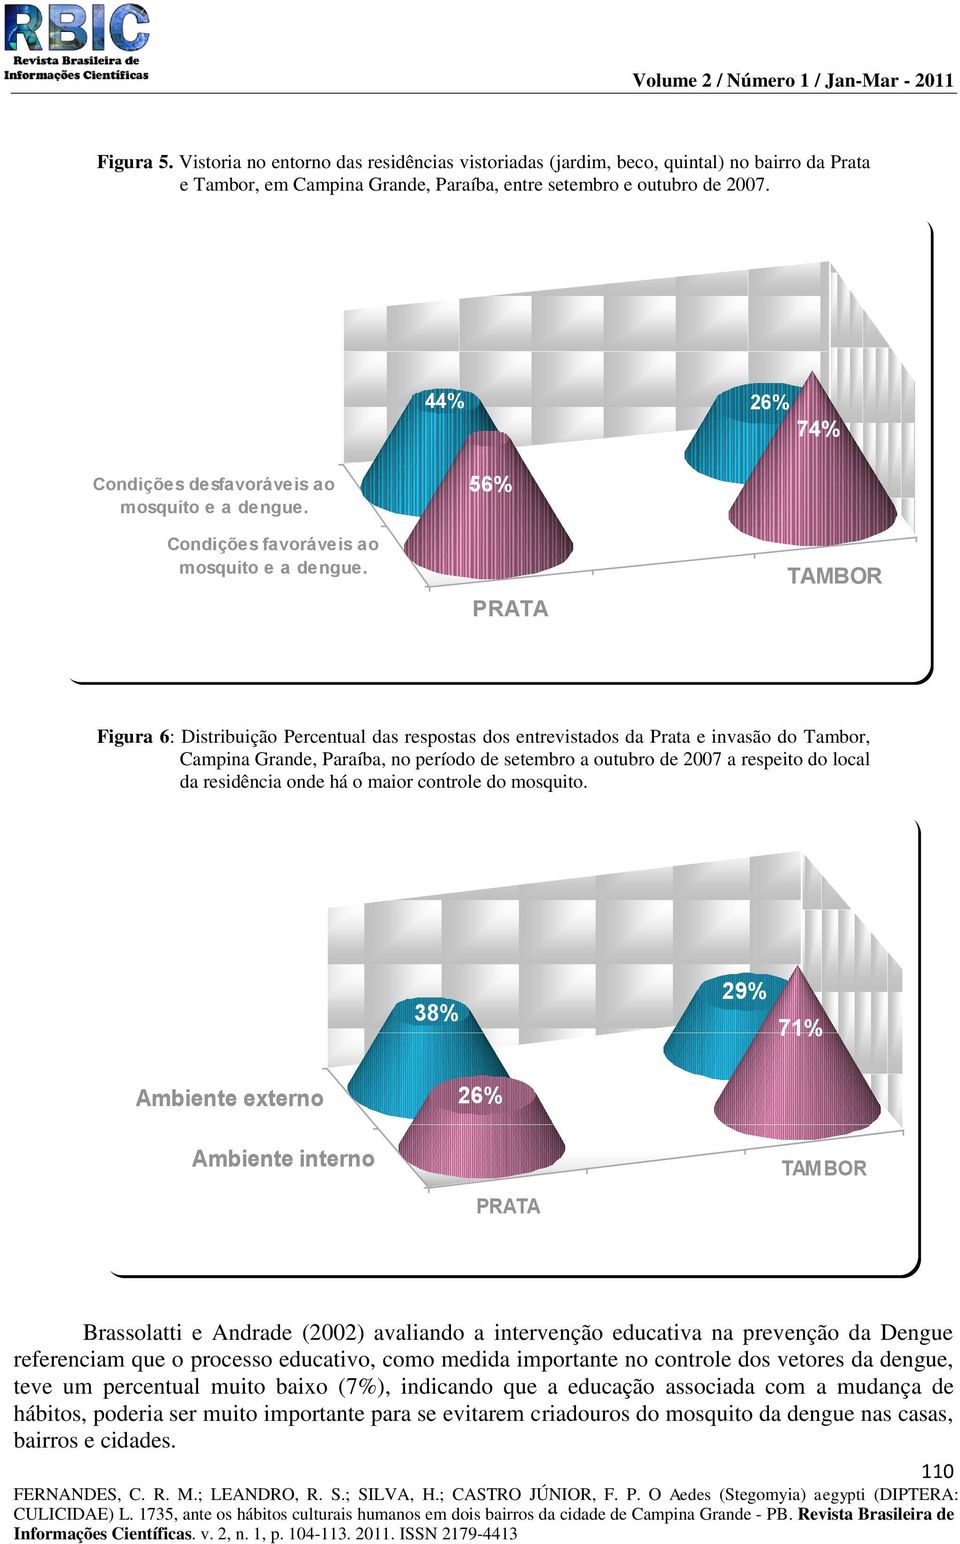 56% Figura 6: Distribuição Percentual das respostas dos entrevistados da Prata e invasão do Tambor, Campina Grande, Paraíba, no período de setembro a outubro de 2007 a respeito do local da residência